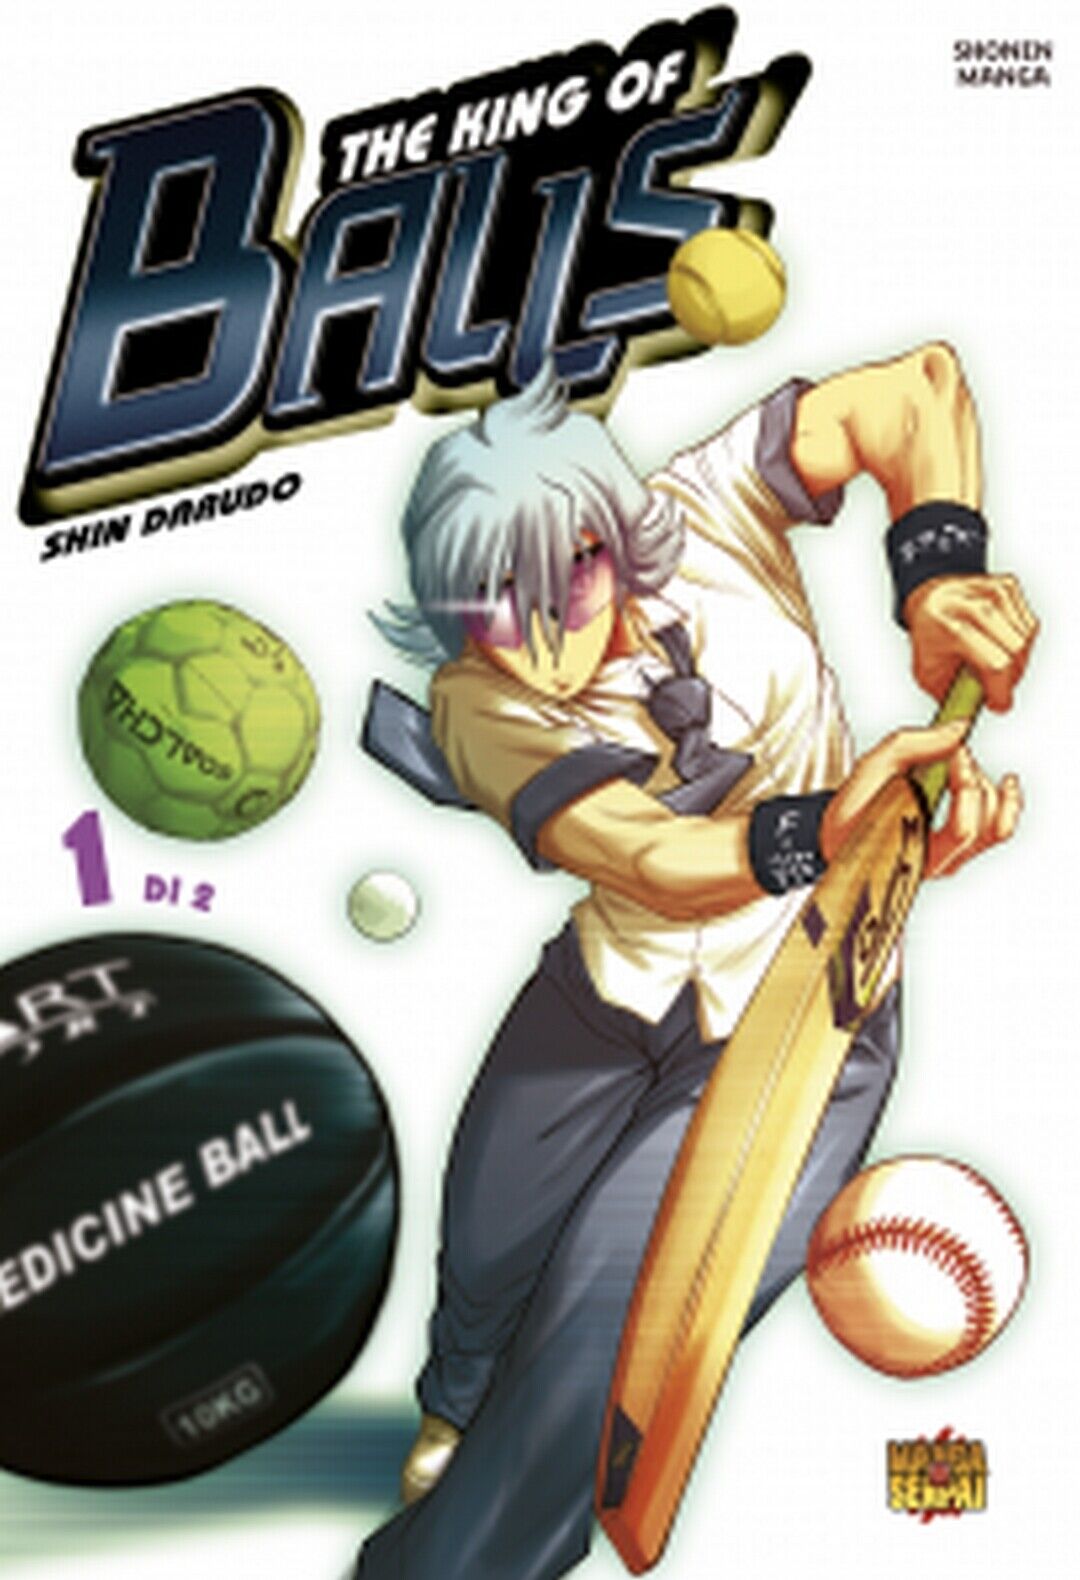 KING OF BALLS 1  di Shin Darudo (autore),  2020,  Manga Senpai